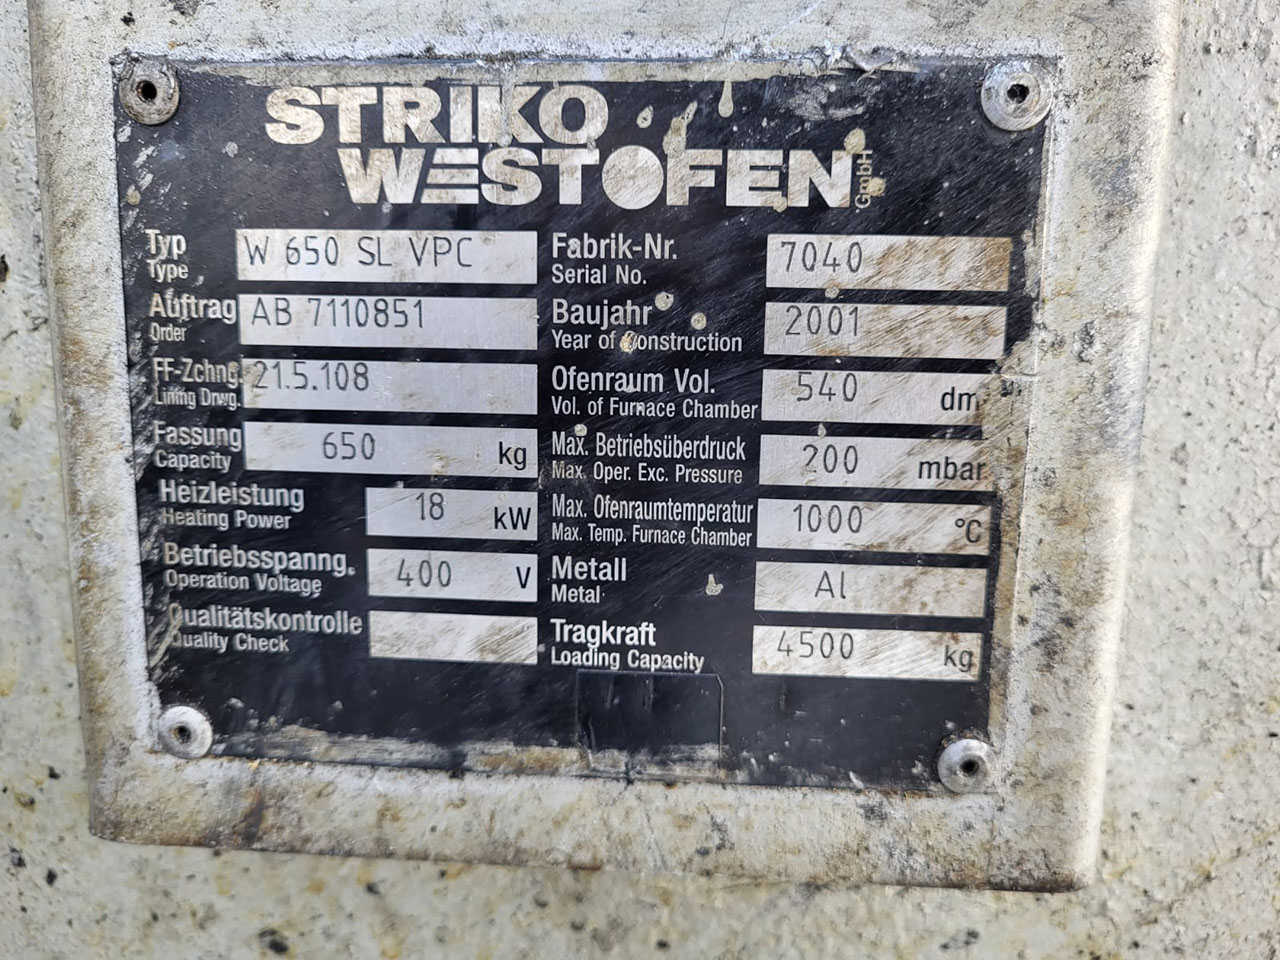 Forno Dosador StrikoWestofen W 650 SL ProDos O1749, utilizado